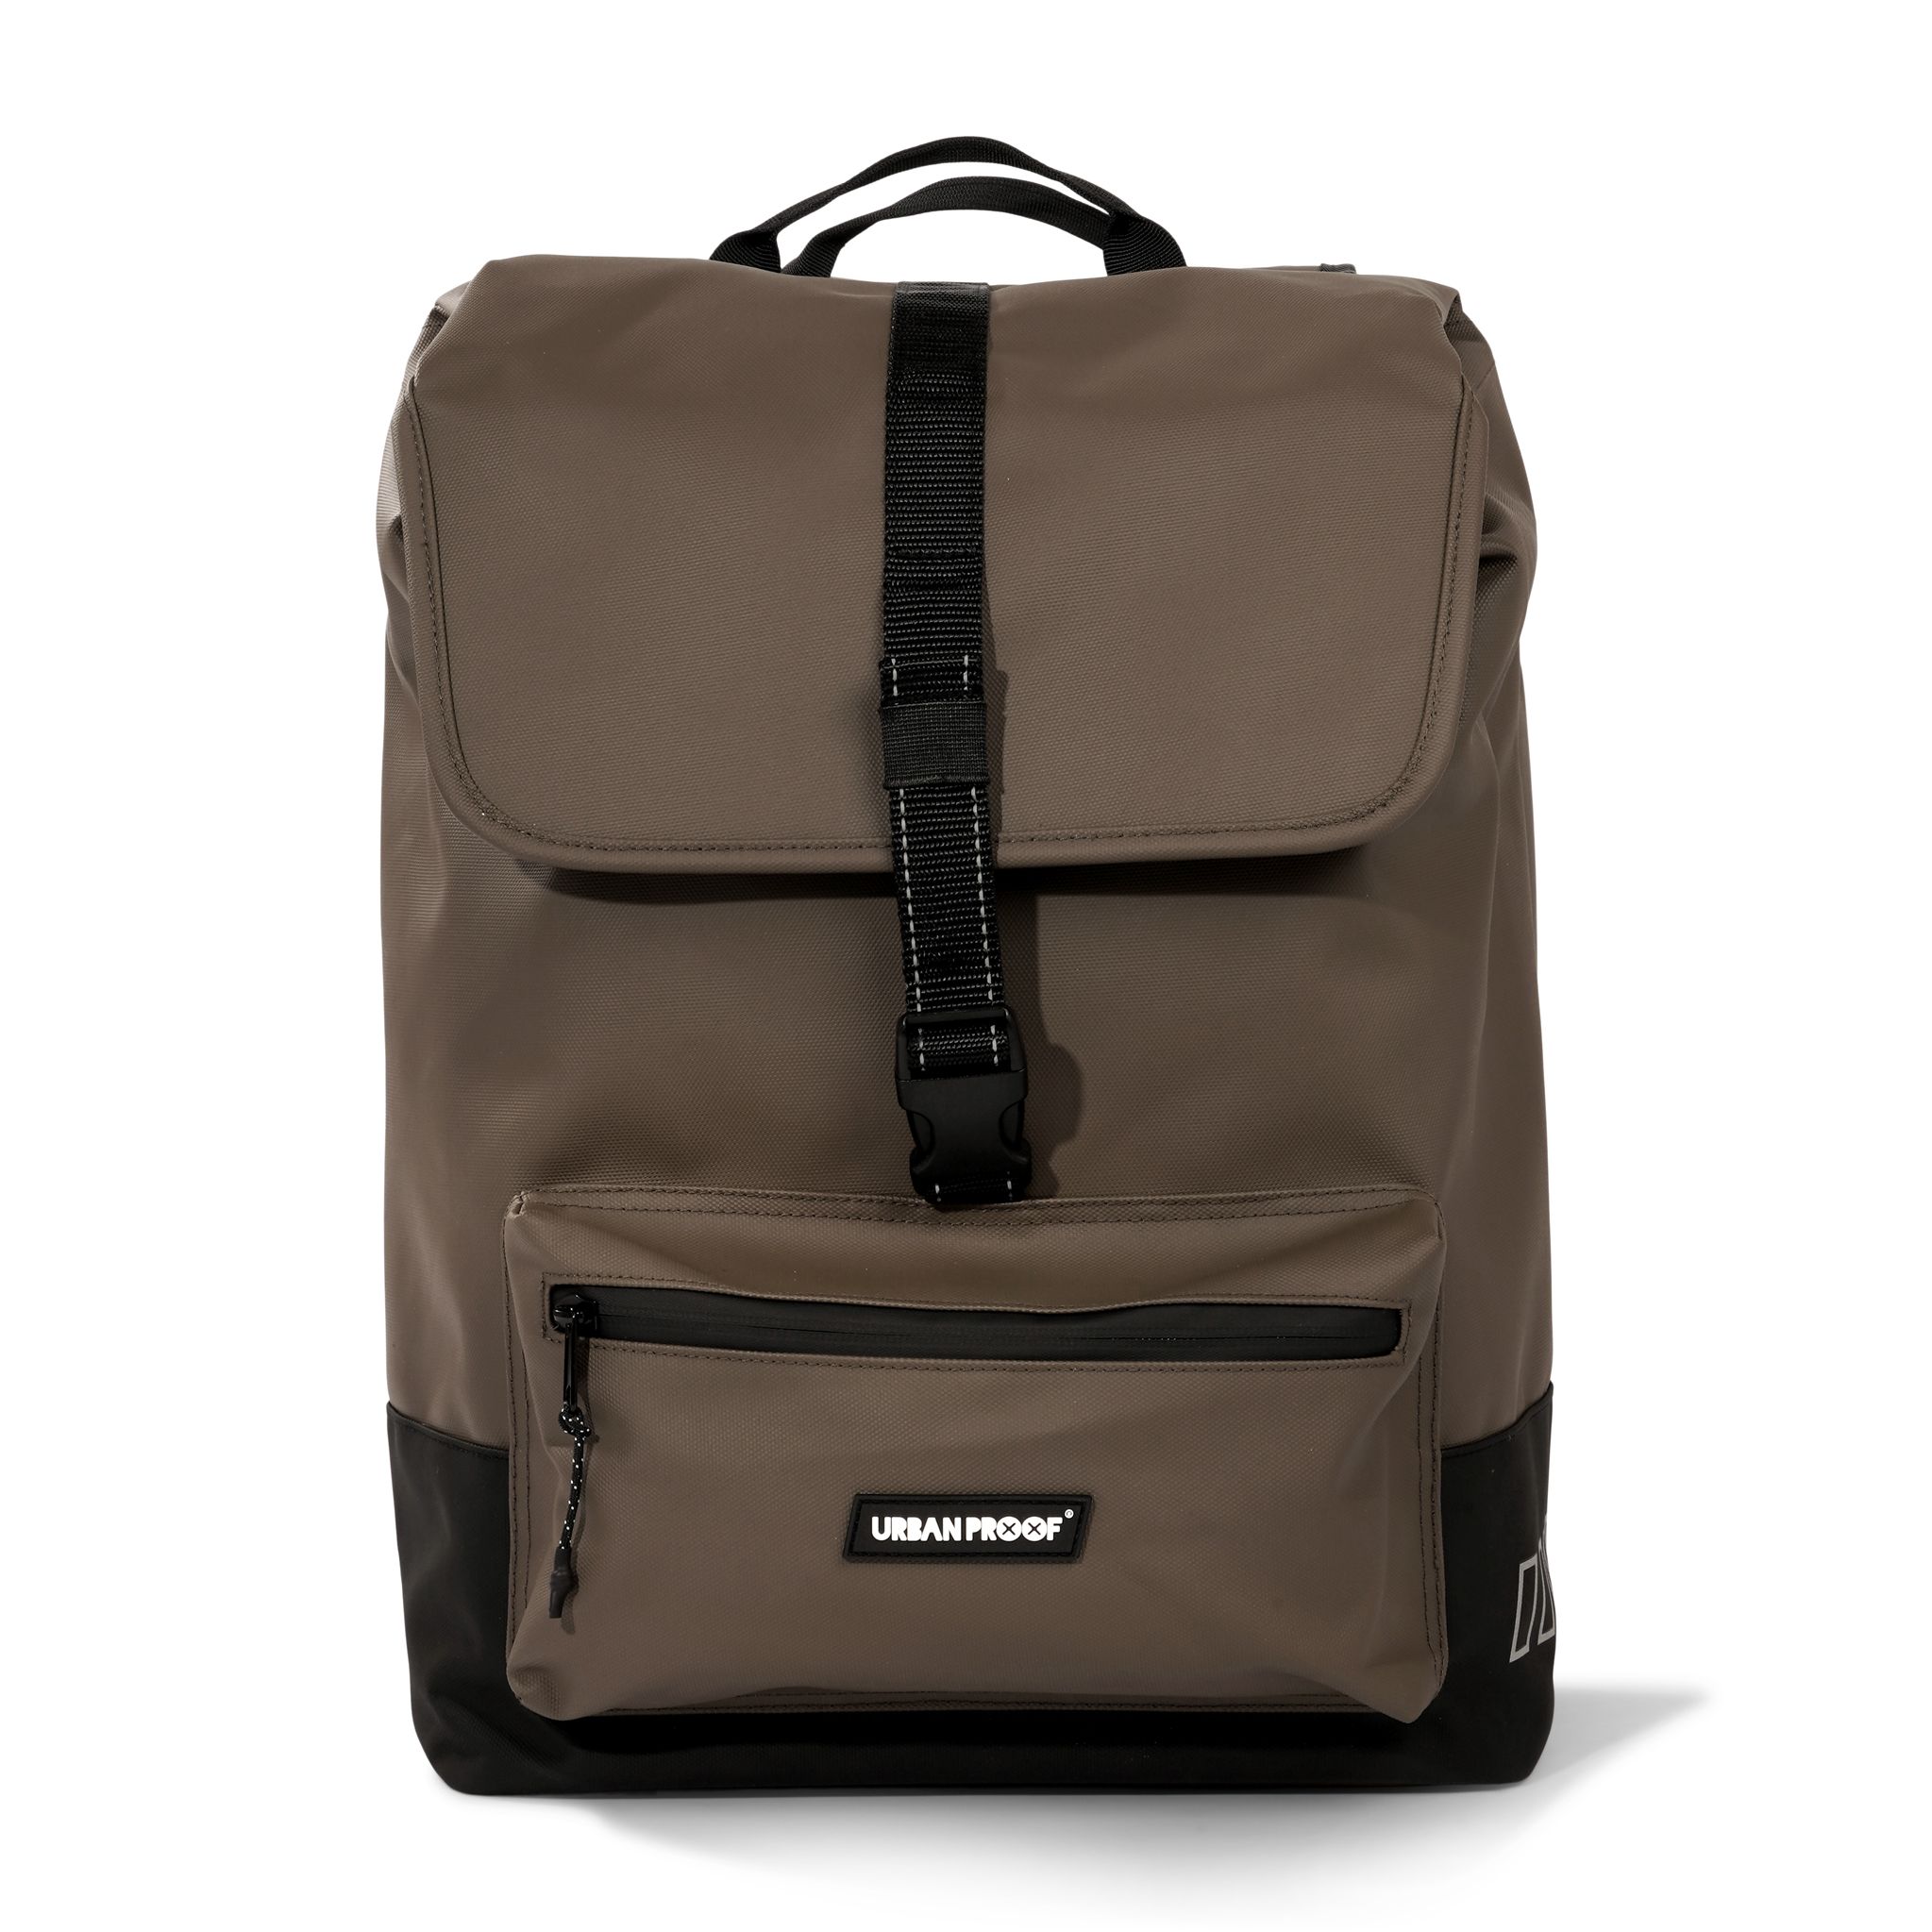 sacoche-double-cargo-urban-proof-marron-bag-brown